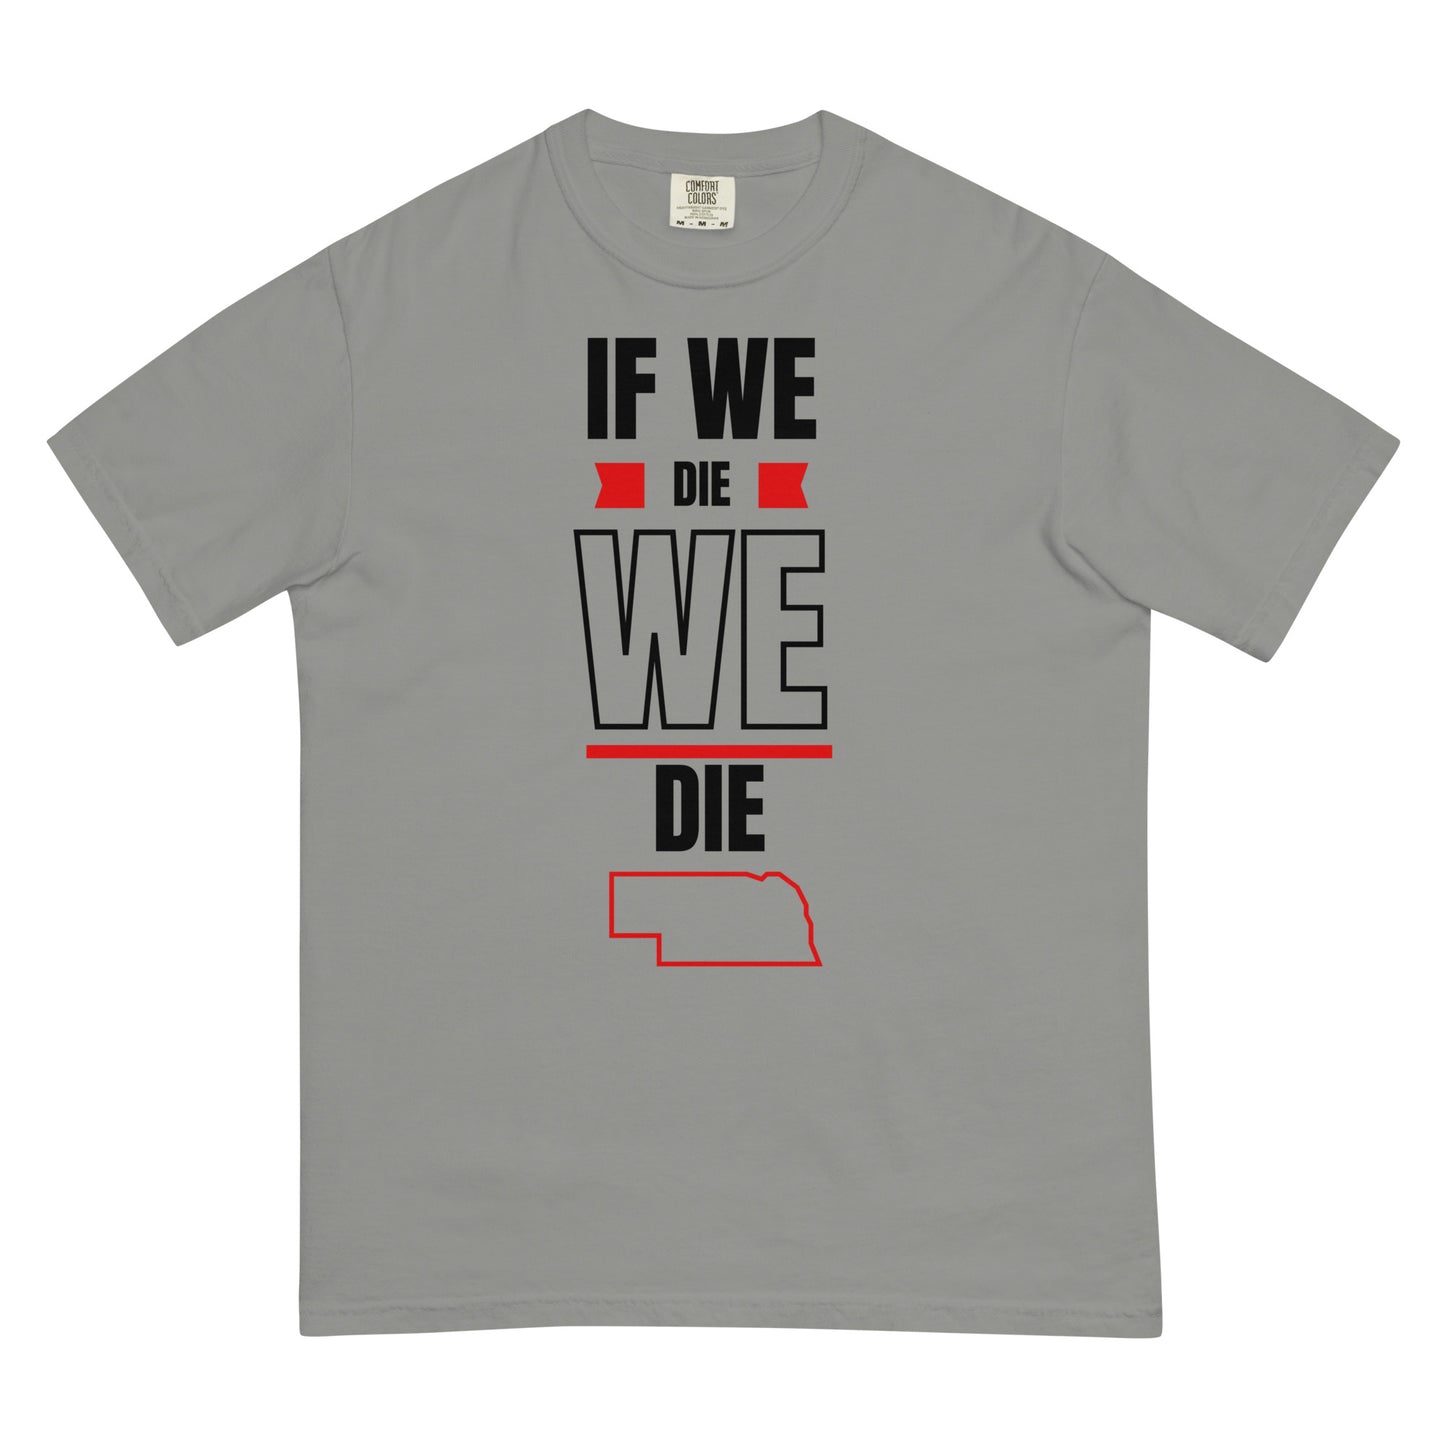 If WE die, WE die. T-shirt